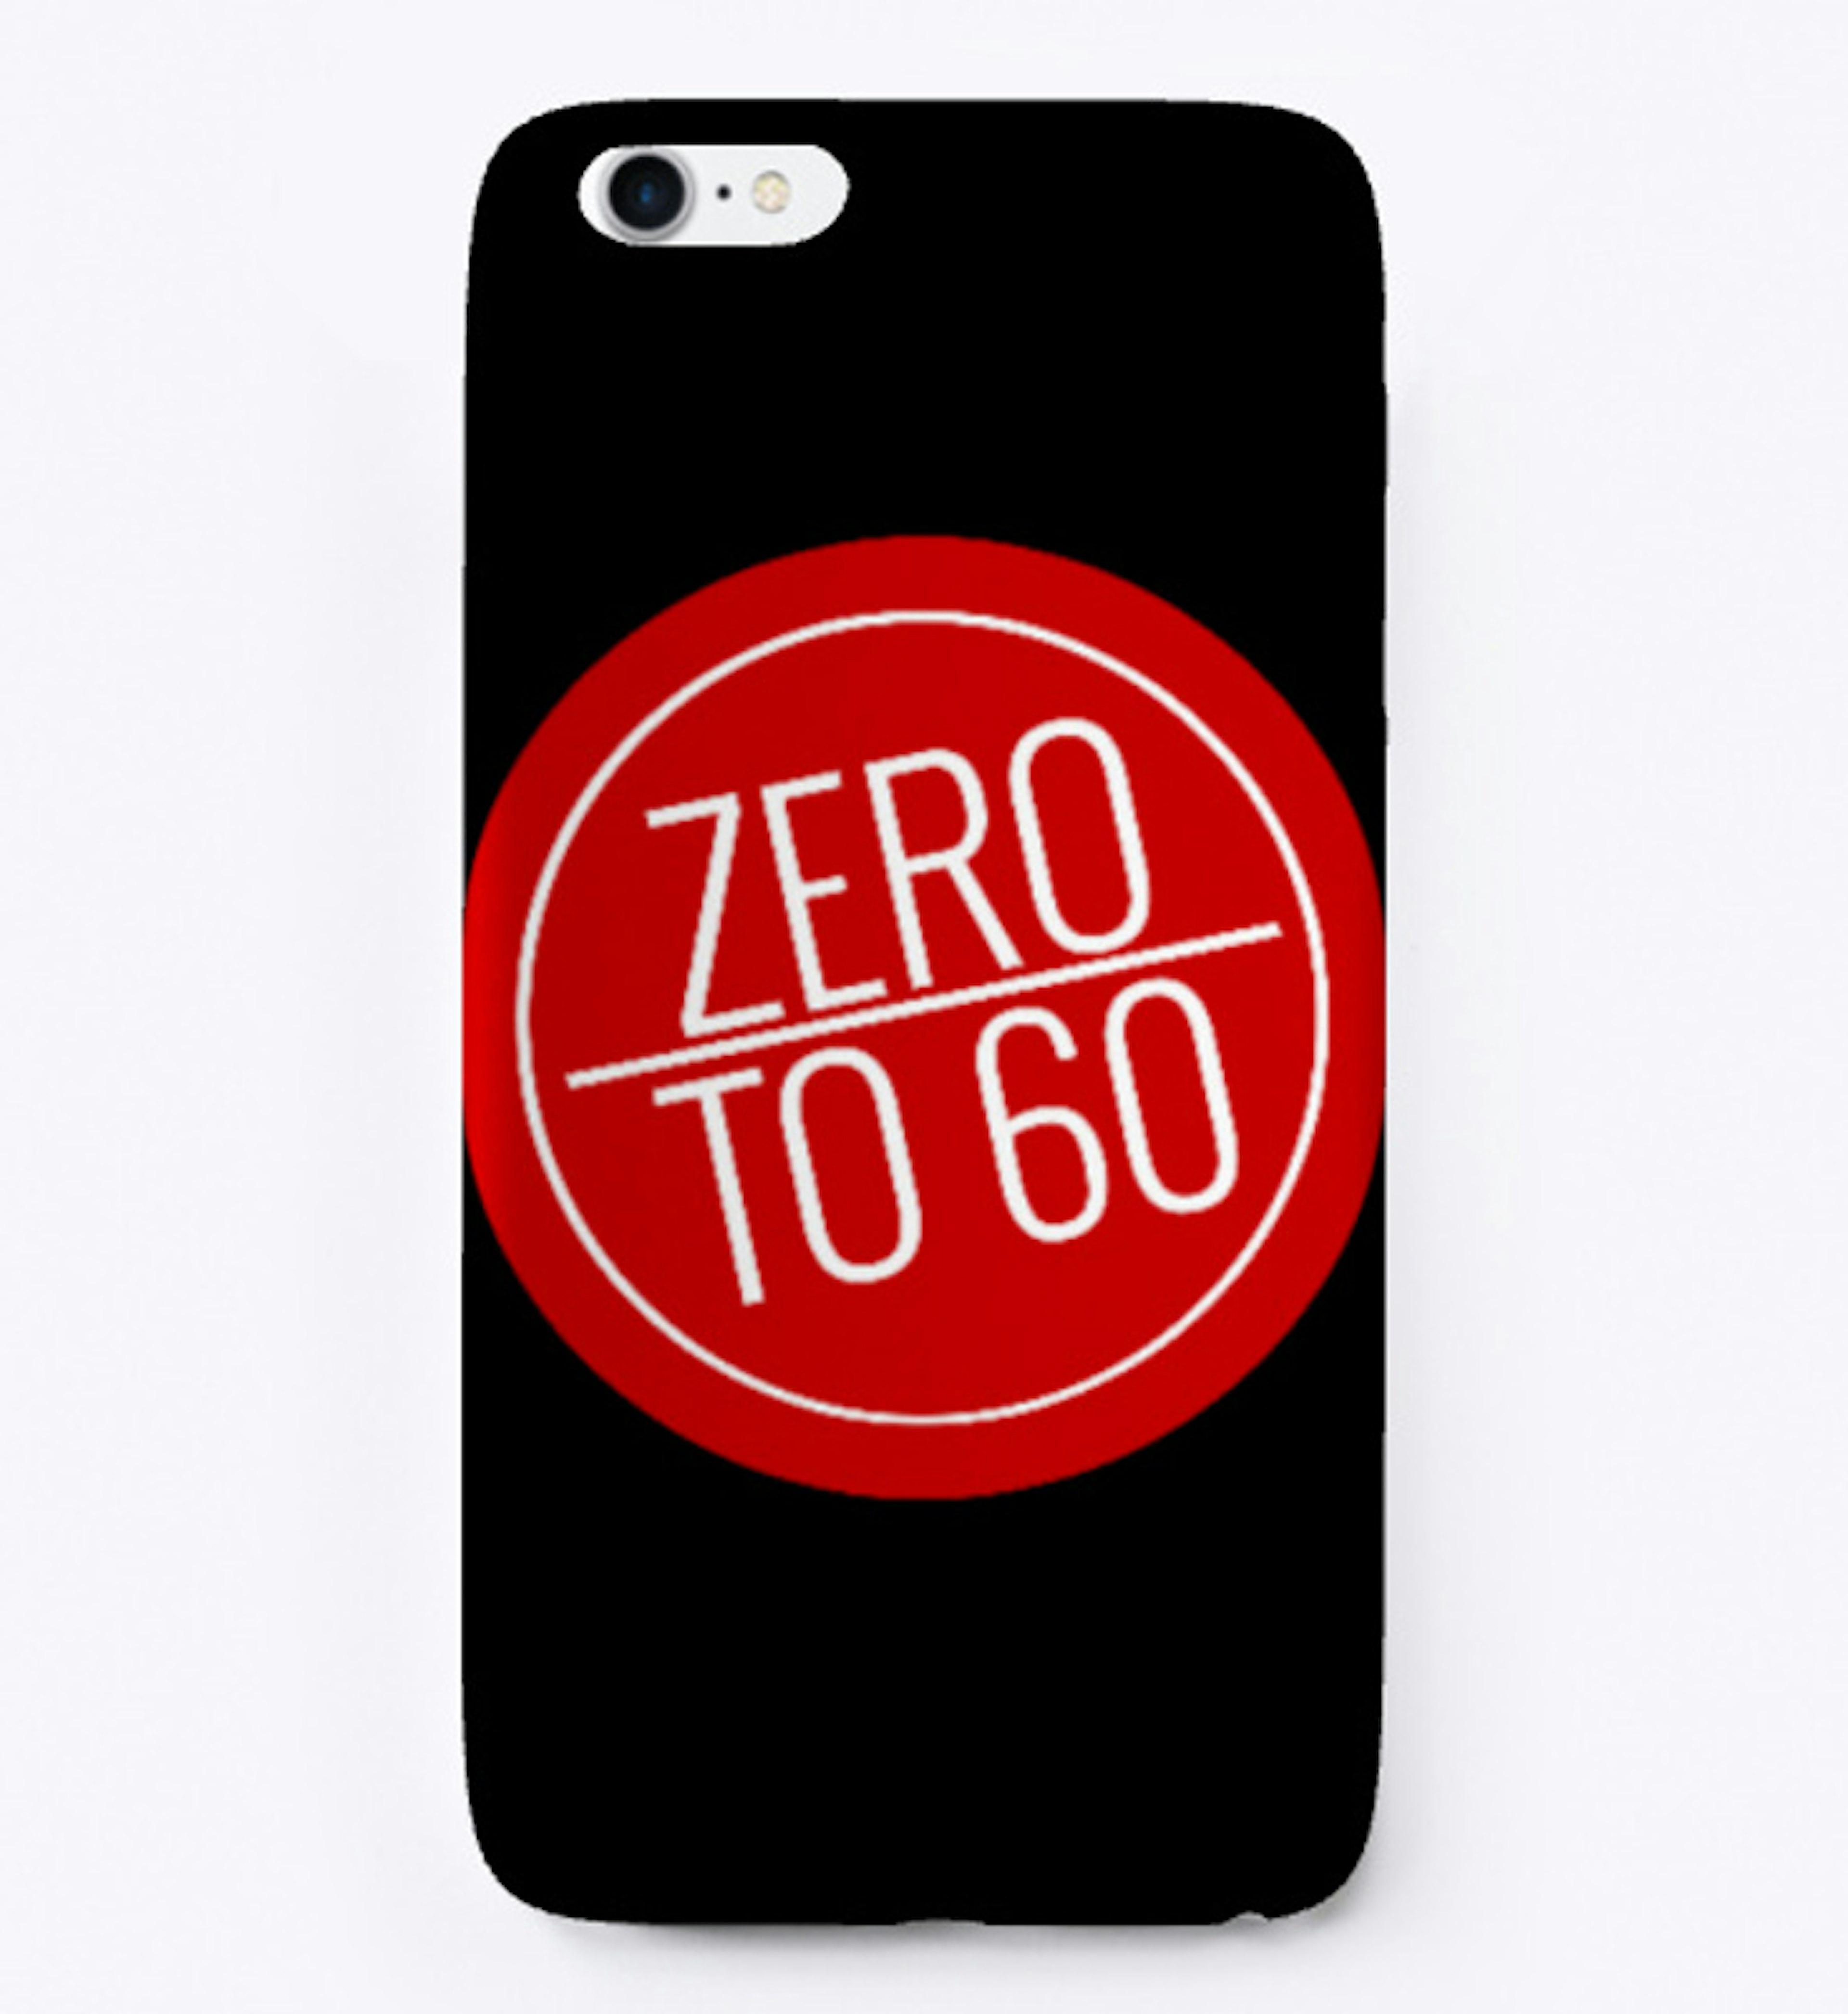 ZeroTo60 iPhone Case